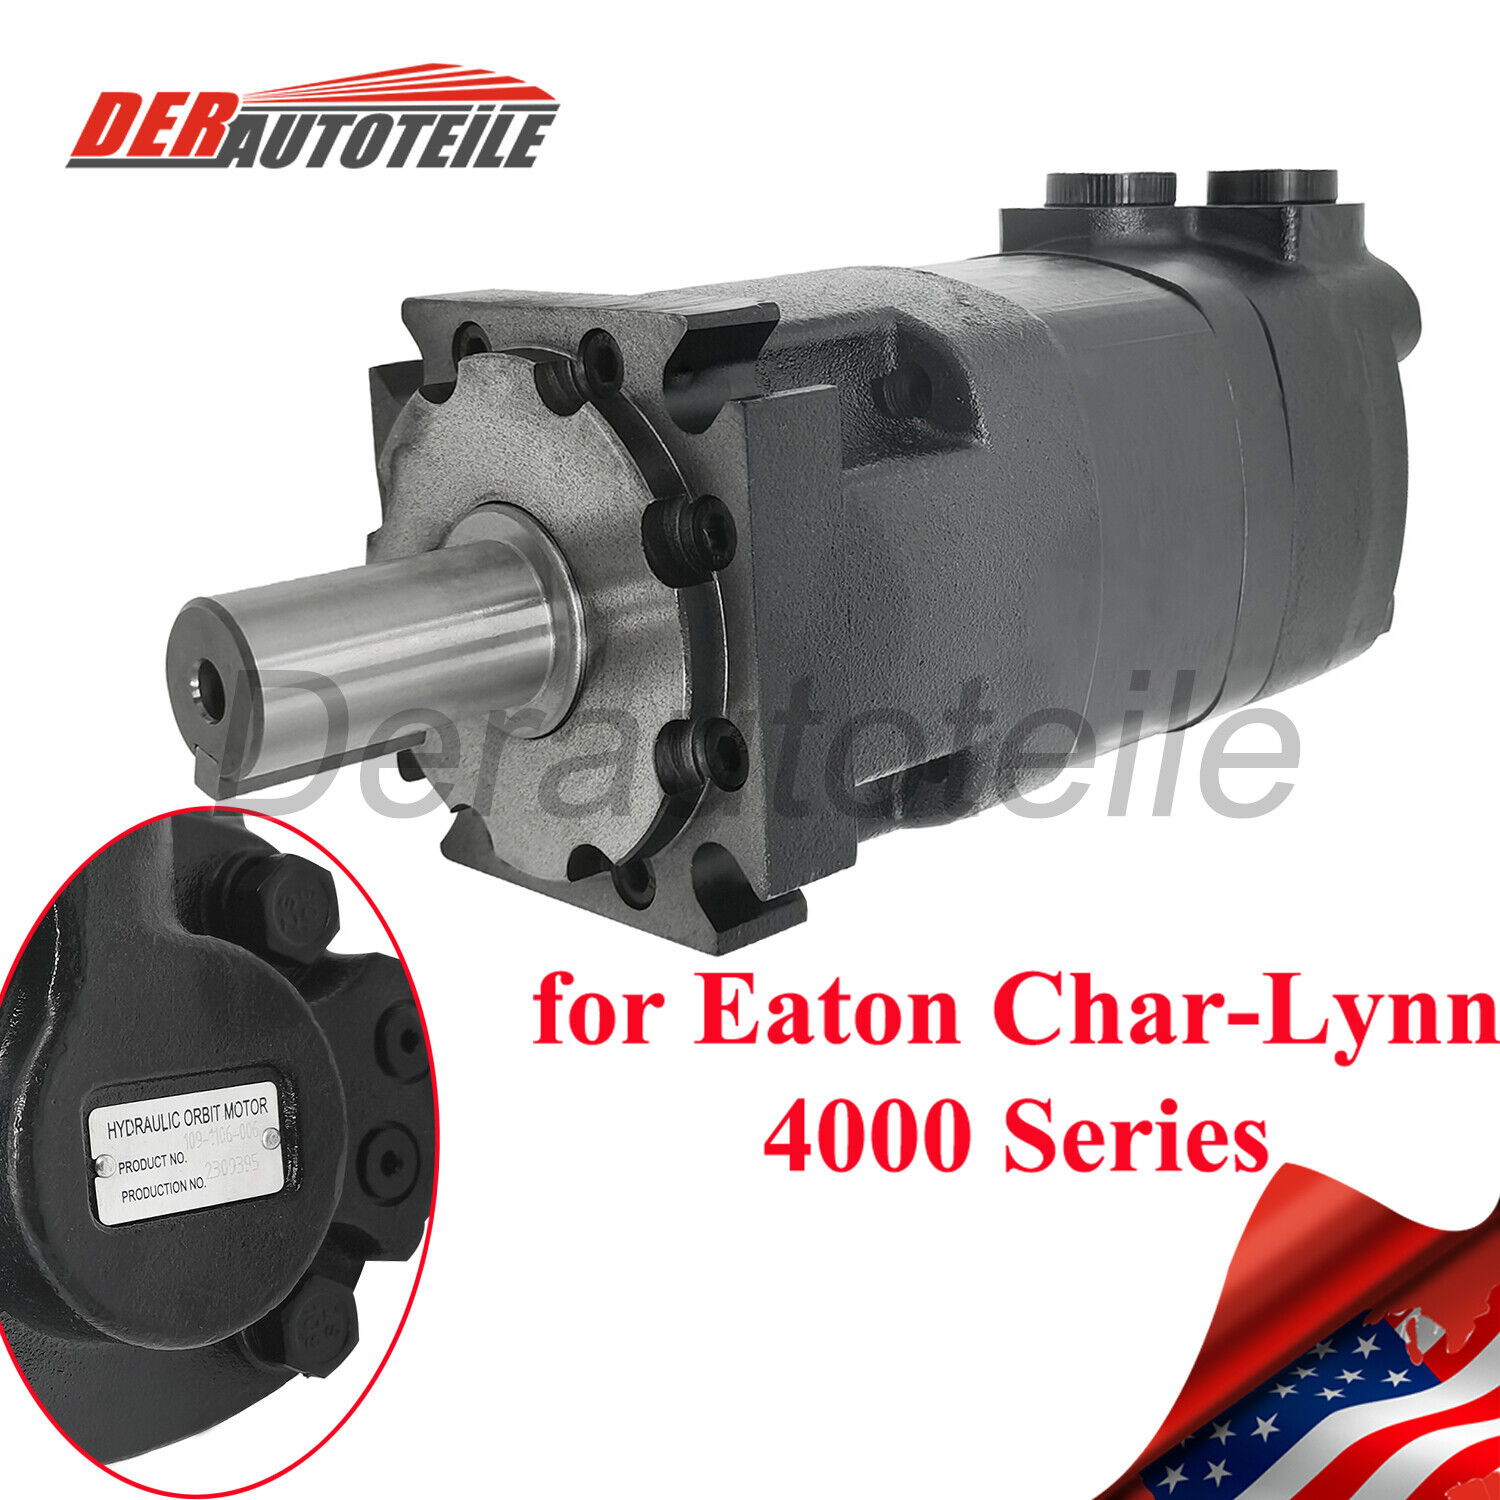 Hydraulic Motor 1091106006 Fits Eaton Char- Lynn 4000 Series Device 109-1106-006